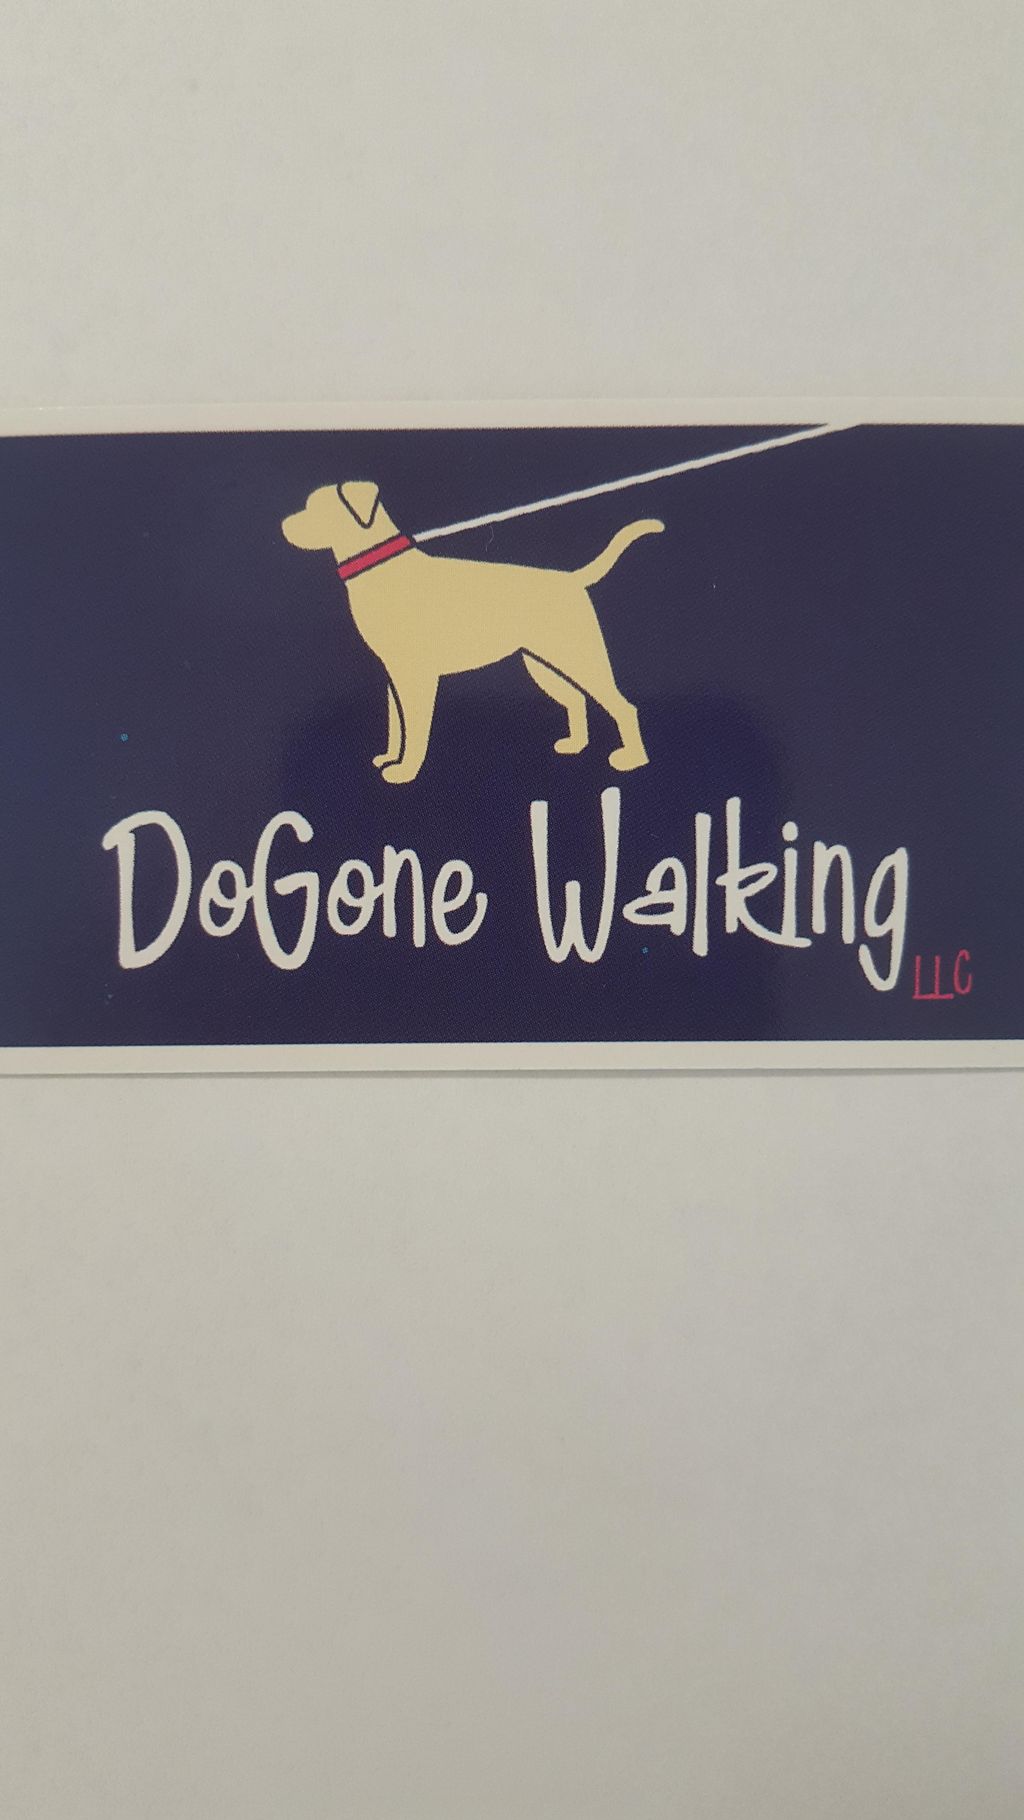 DoGone Walking, LLC